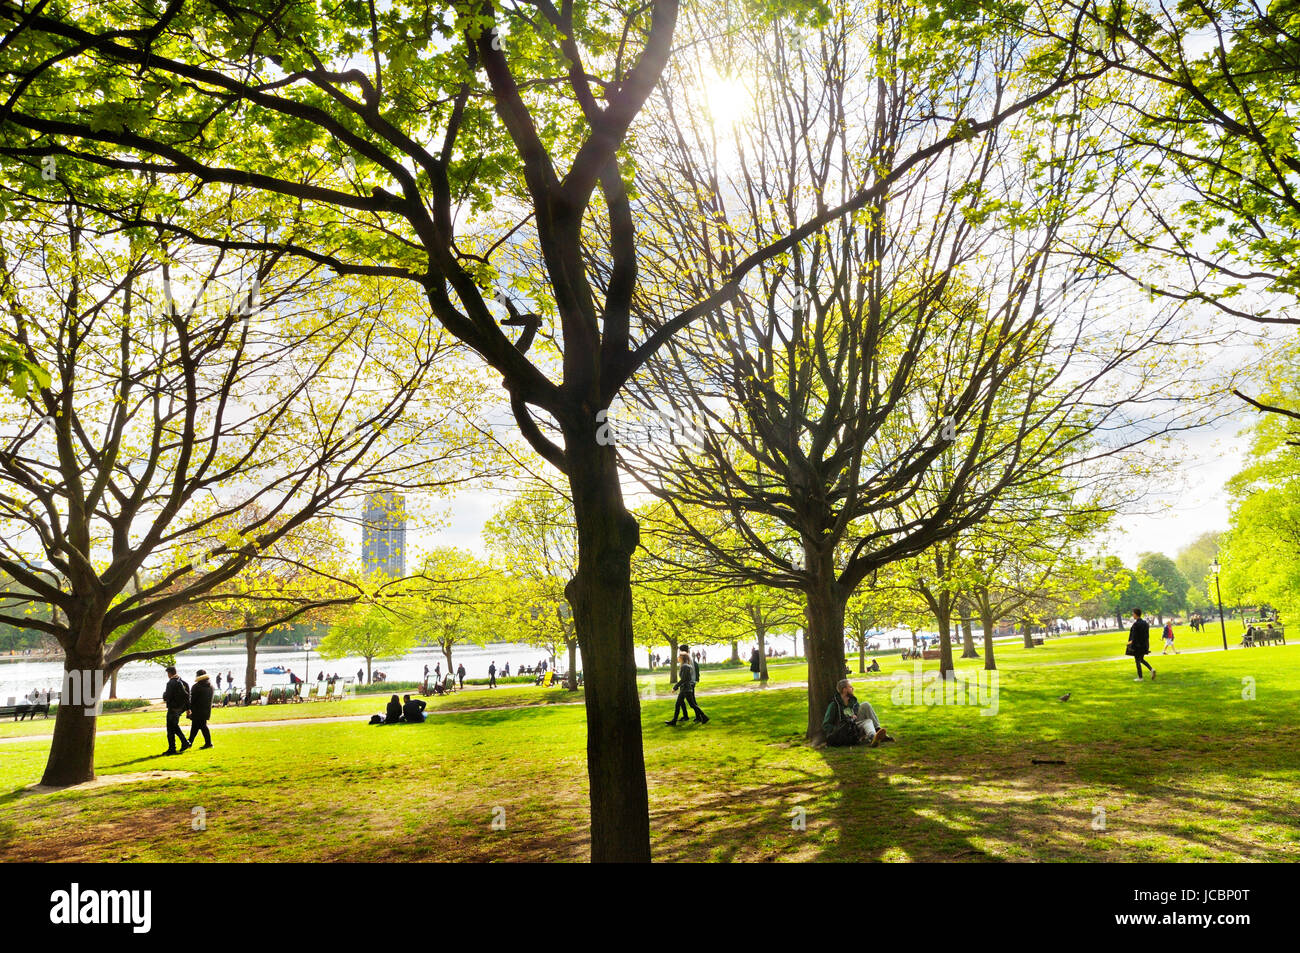 Hyde Park, London.  Ein gemütlicher Spaziergang unter sonnigen Bäumen im Londoner Hyde Park in Richtung des berühmten Serpentine-Flusses. Stockfoto